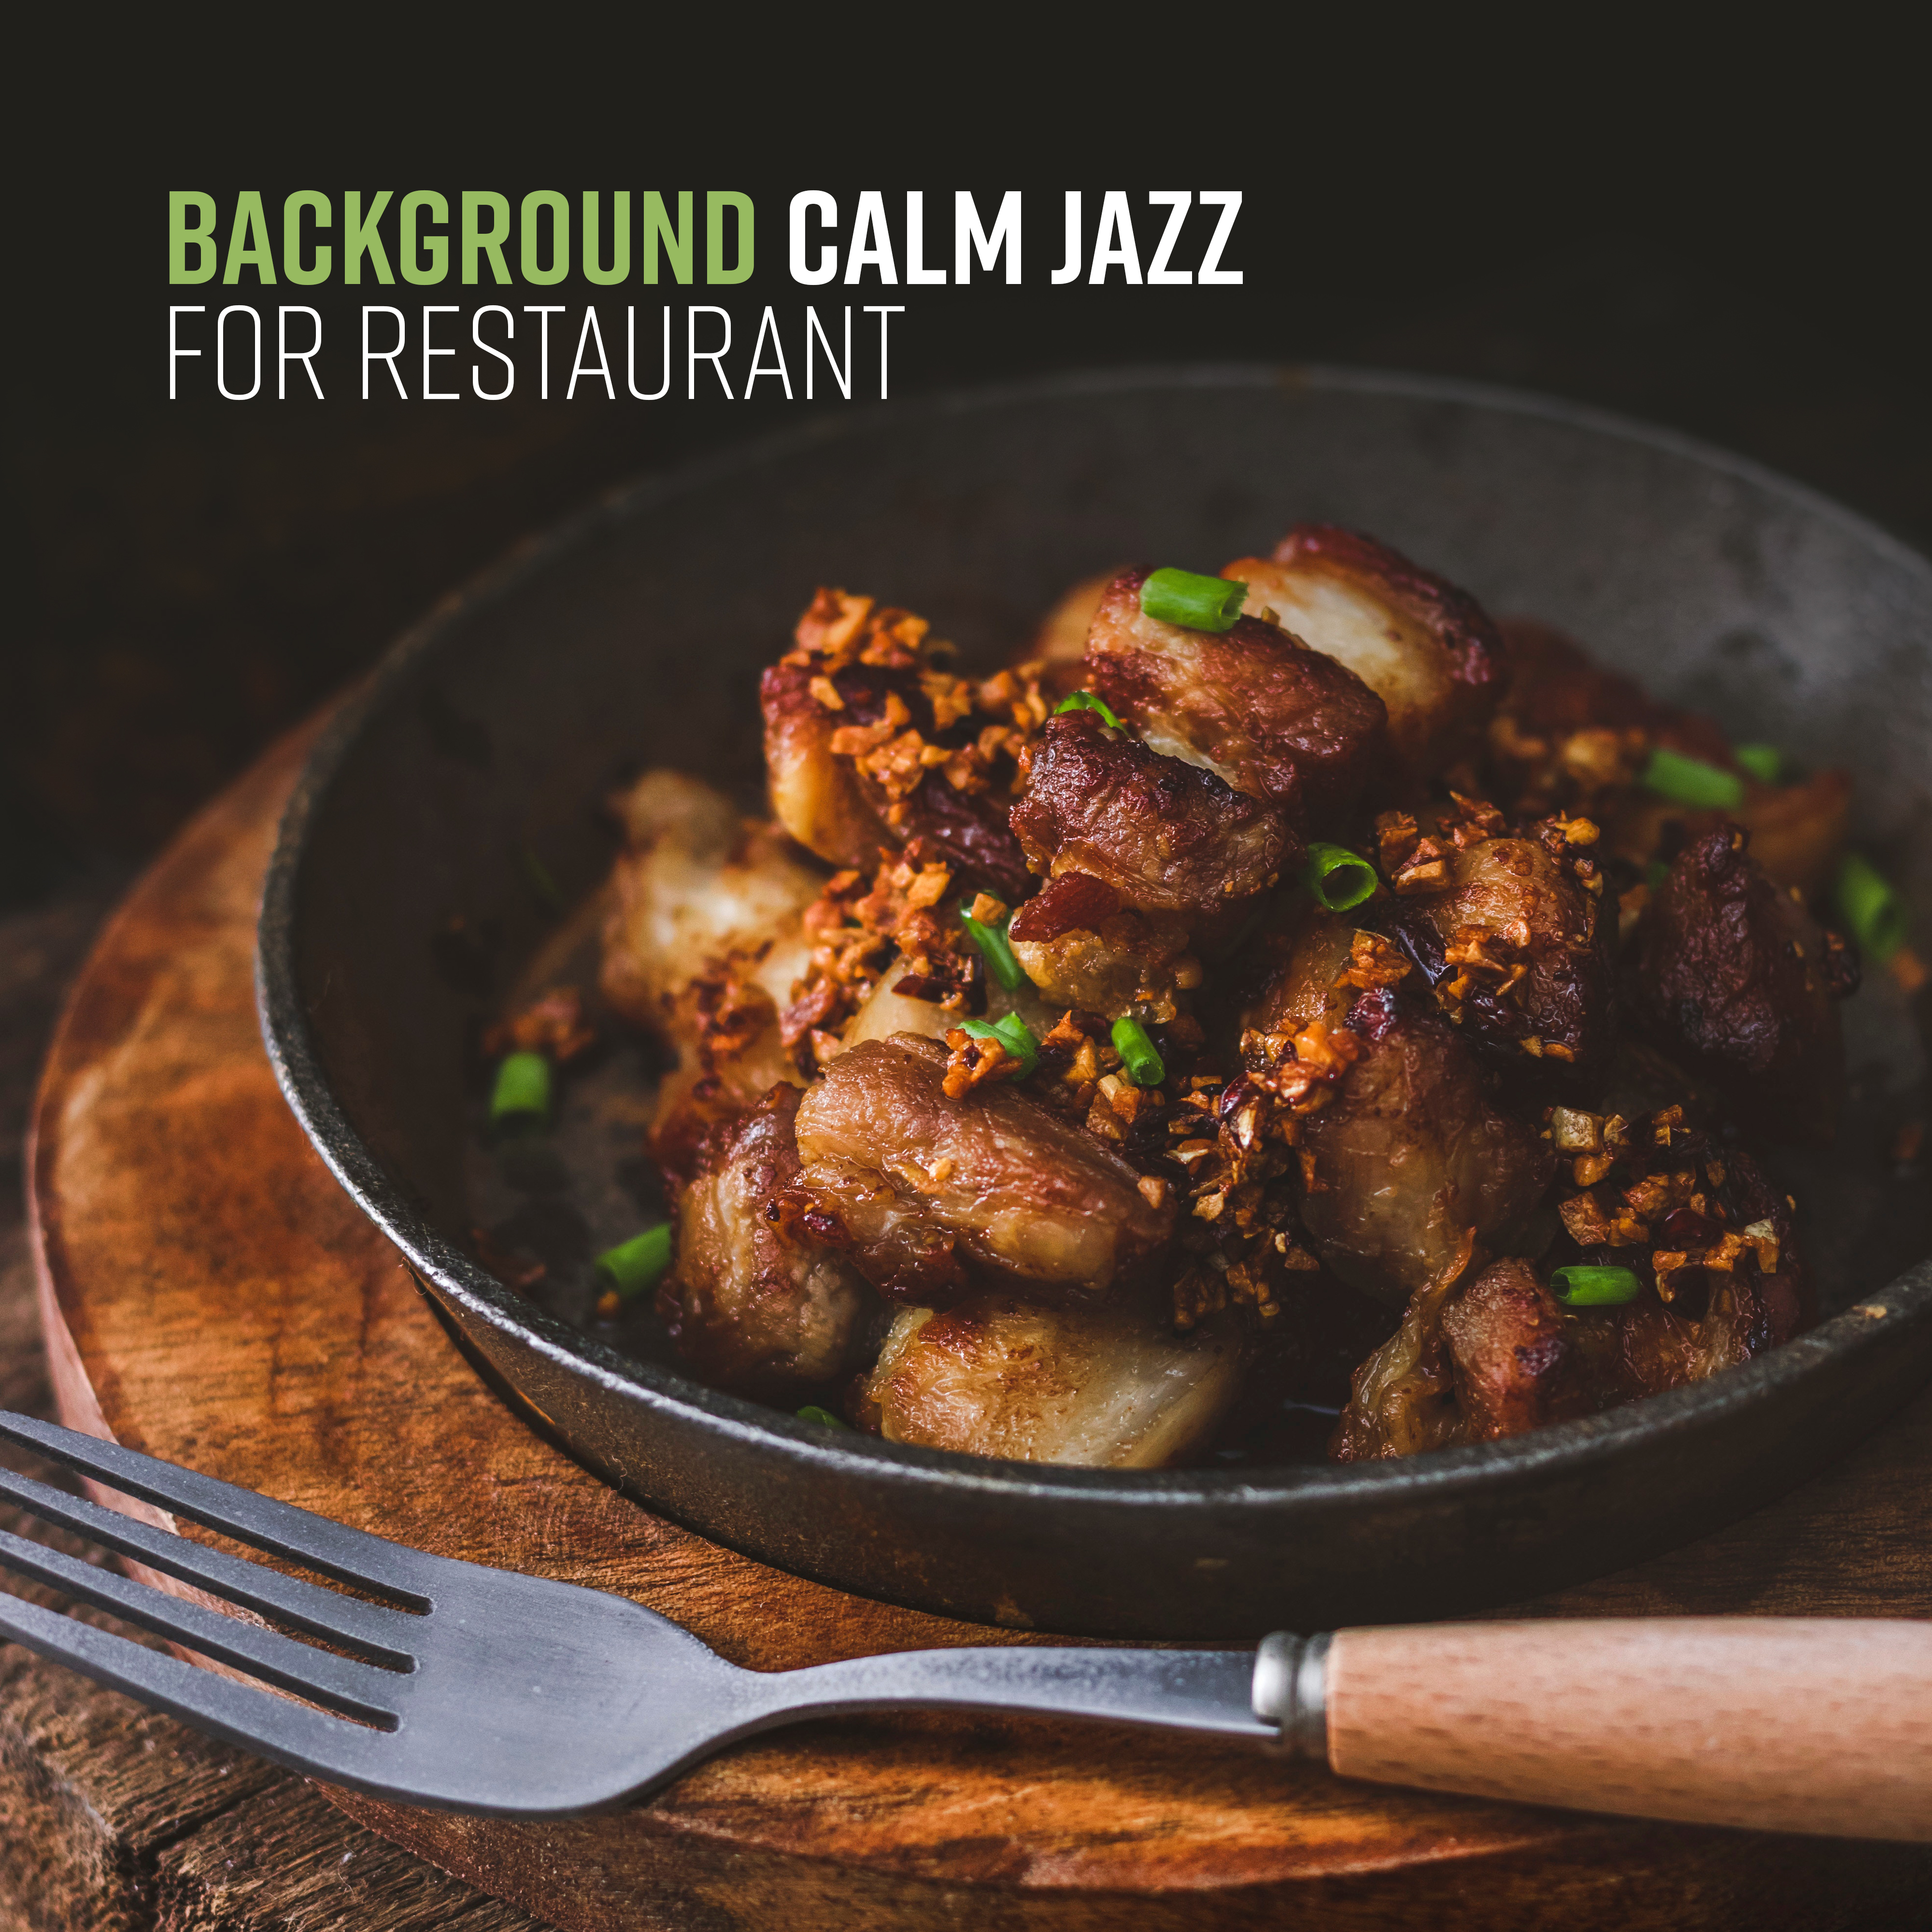 Background Calm Jazz for Restaurant